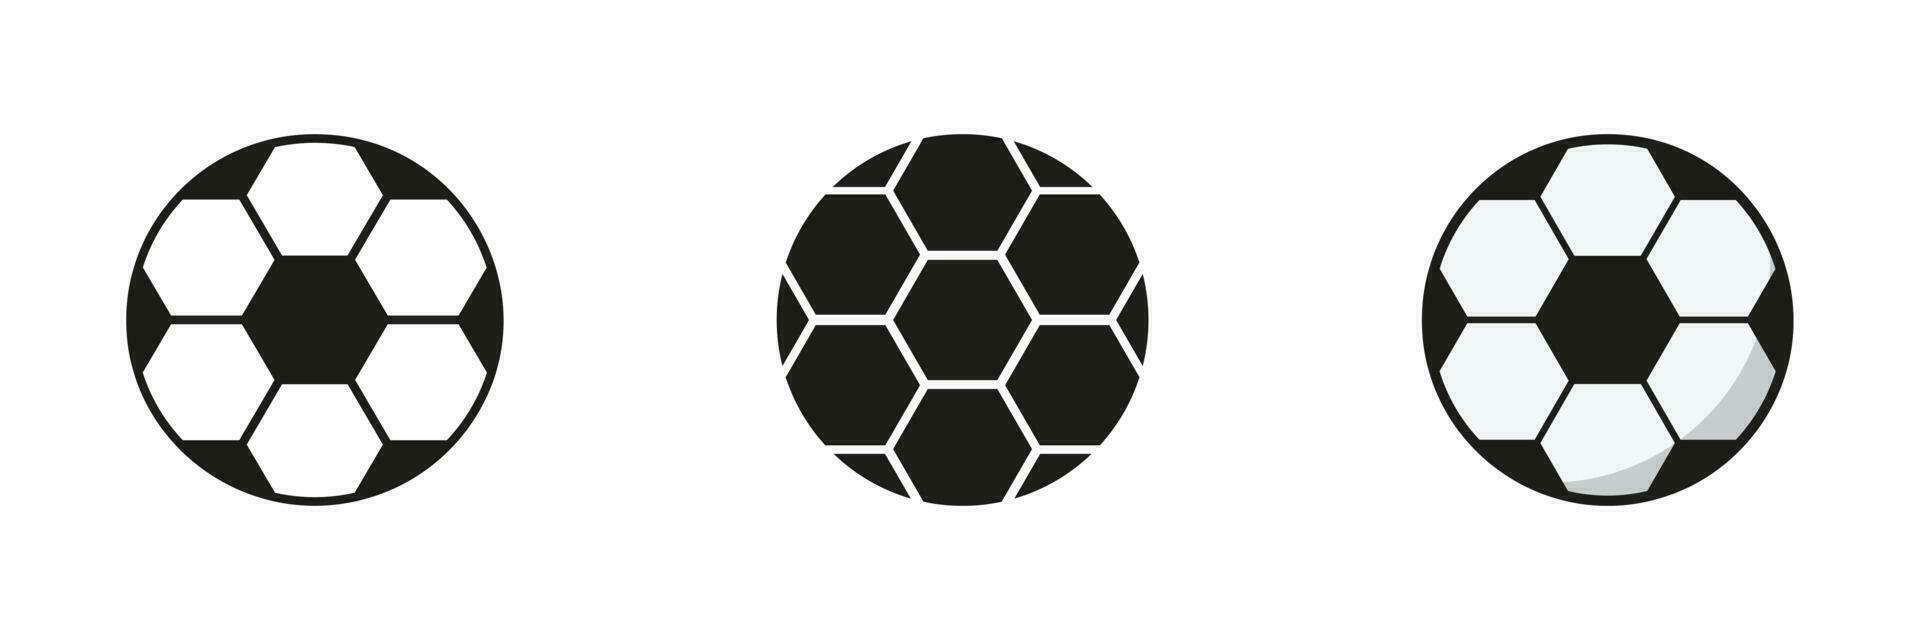 fútbol pelota silueta y línea icono colocar. fútbol americano pelota para jugar Deportes juego sólido y contorno símbolo colección en blanco antecedentes. aislado vector ilustración.